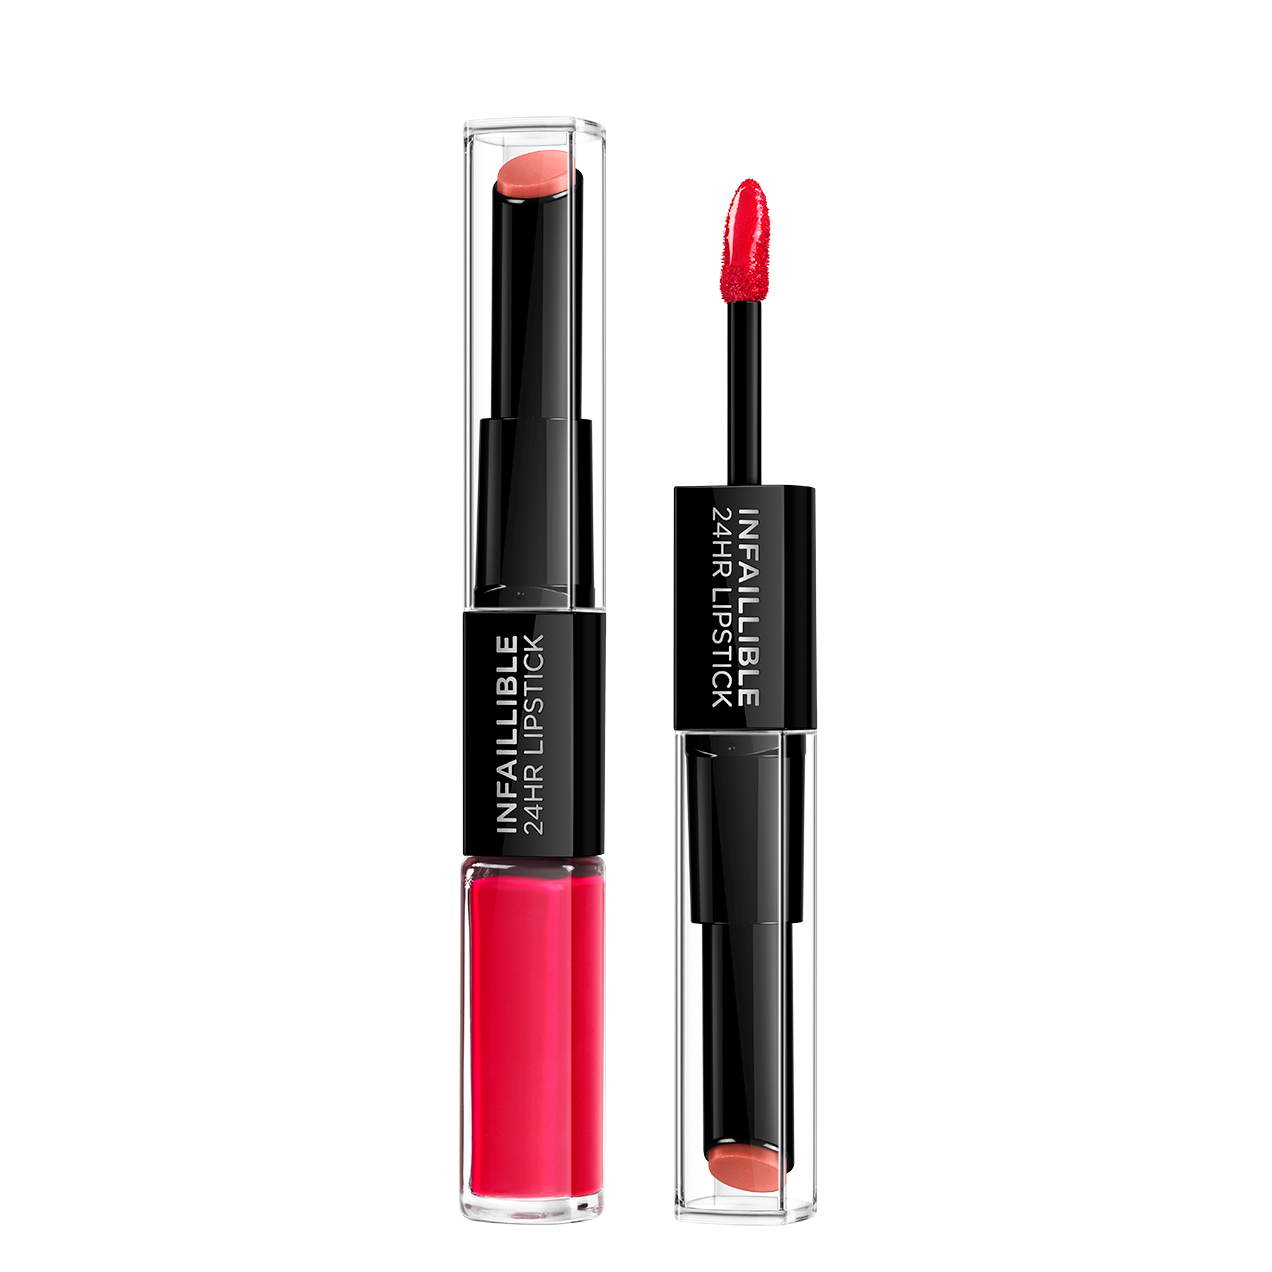 L'Oréal Make-Up Designer Infaillible 24H Lipstick - 701 Cerise - Rood - Langhoudende, Verzorgende Lippenstift - 5 ml